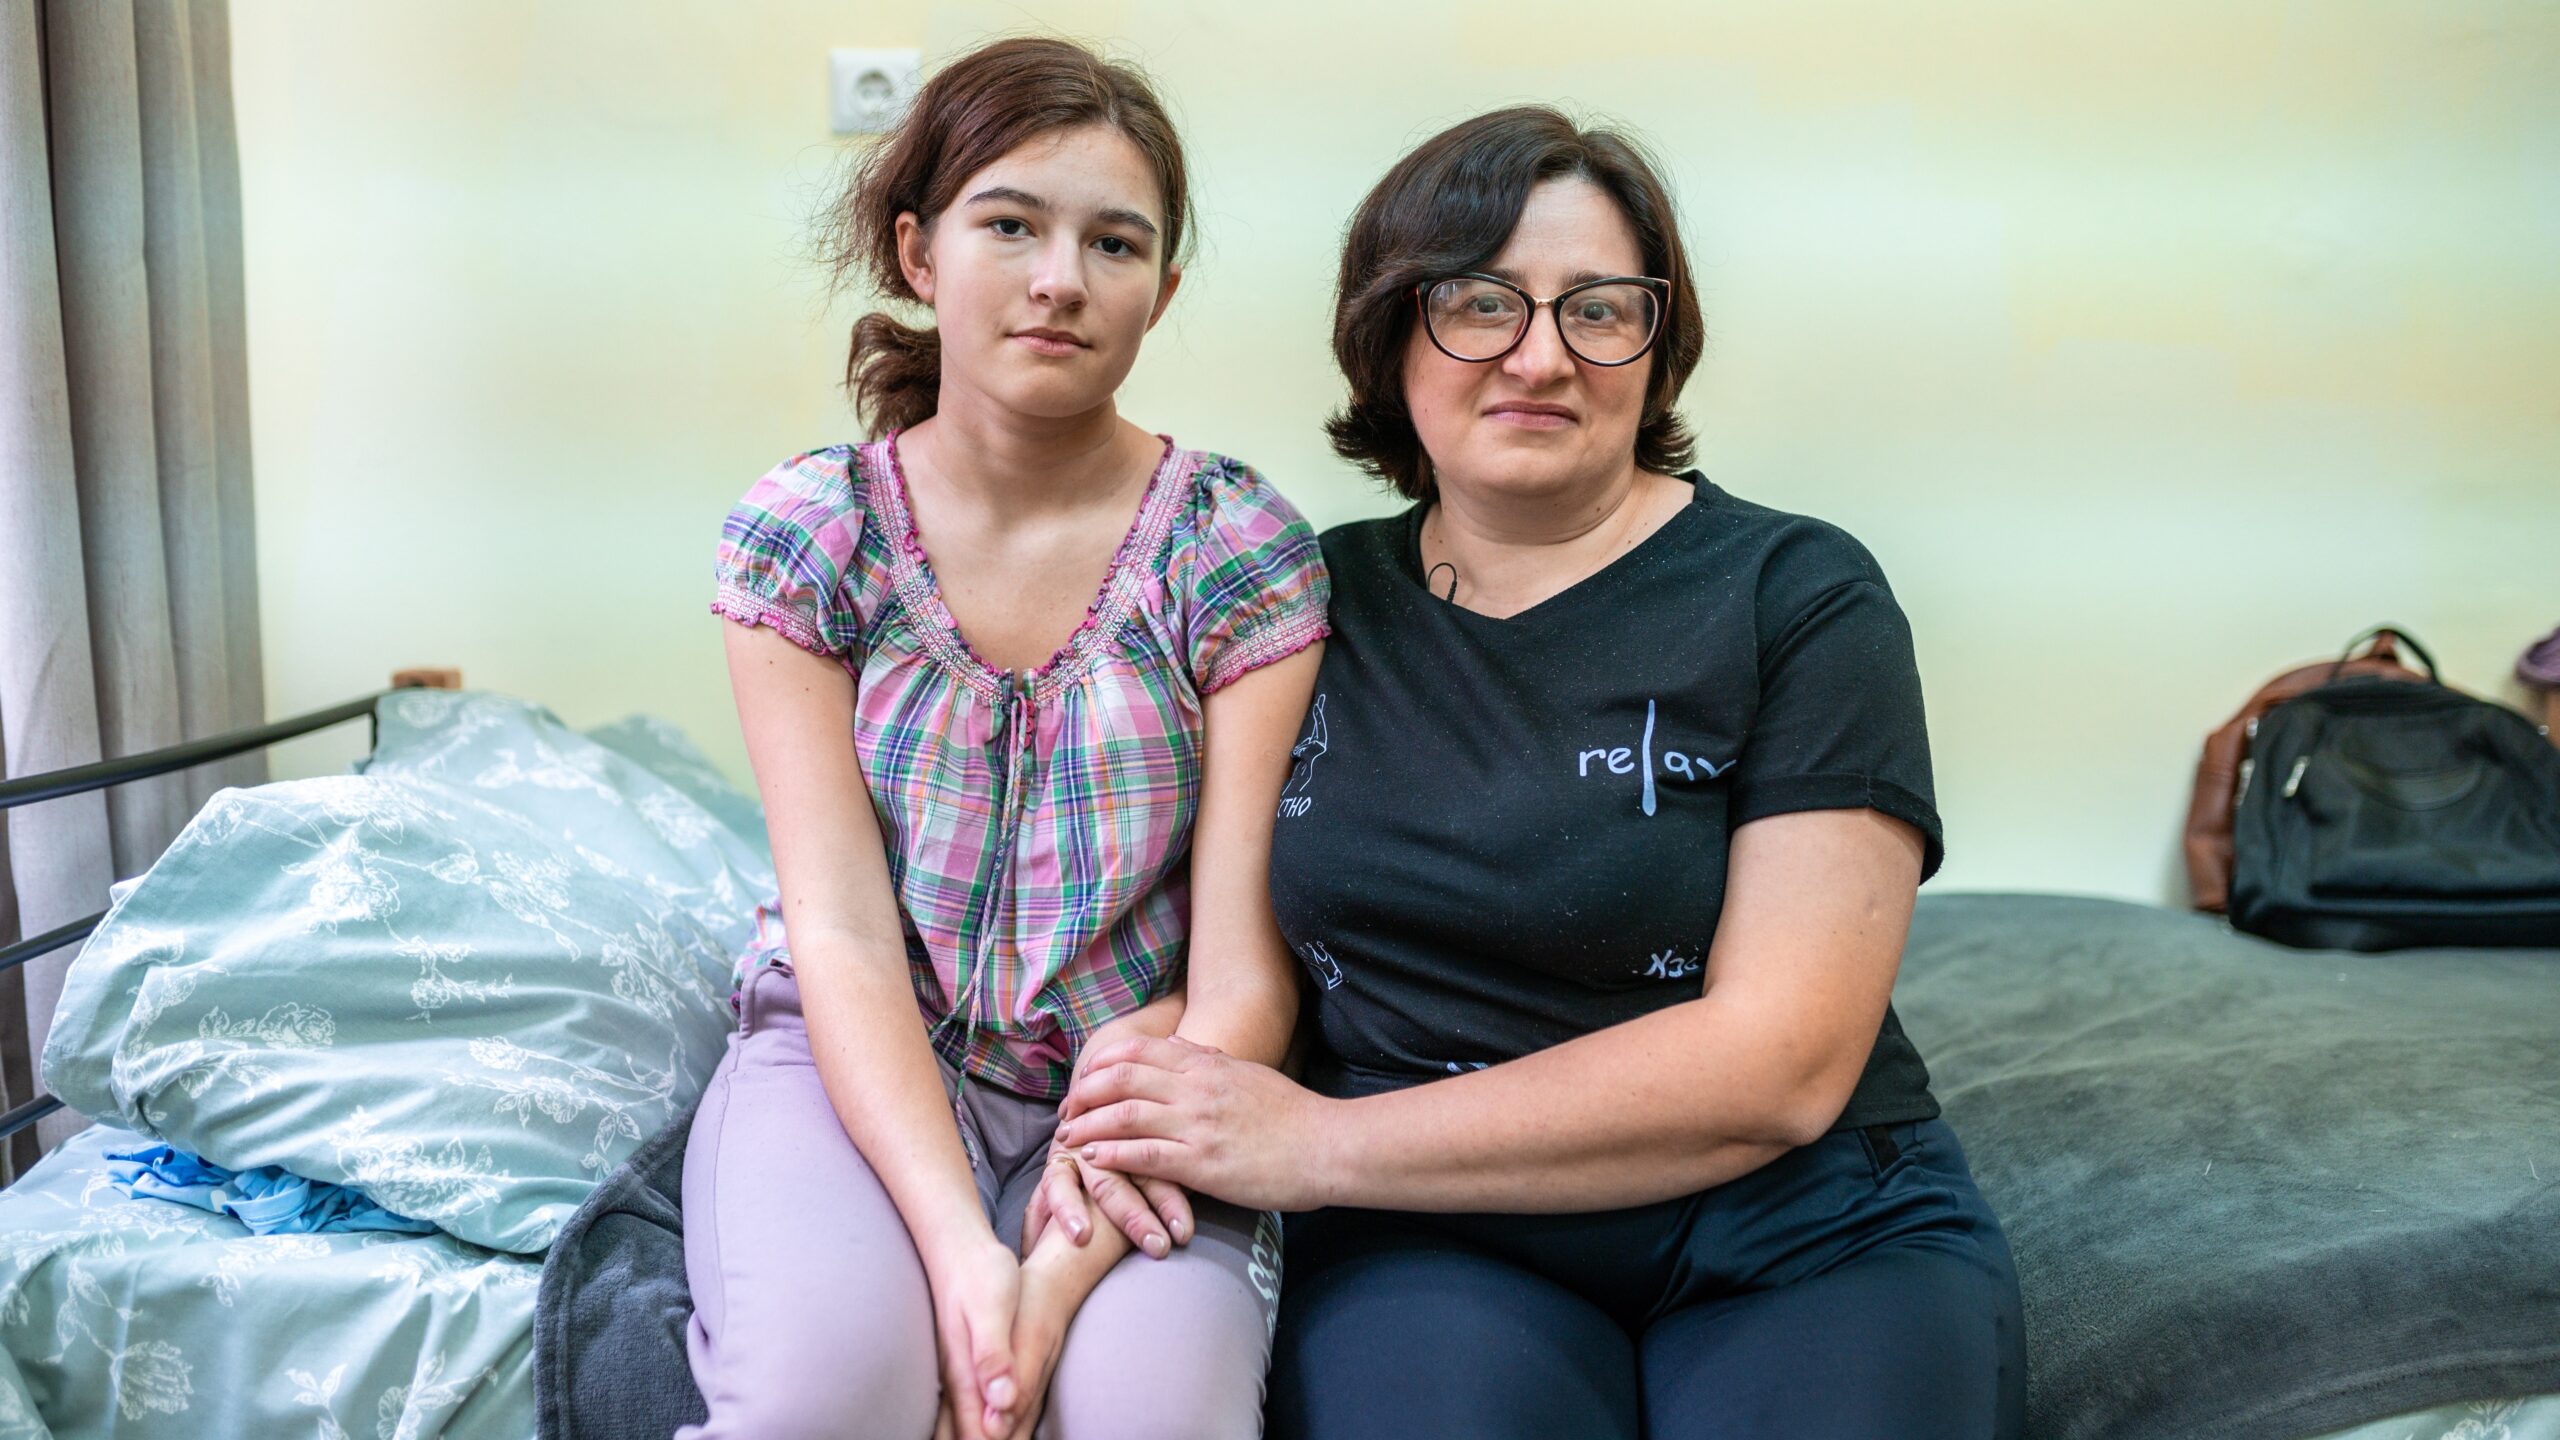 Natalia Artiukh en haar dochter in het ziekenhuis in de Bulgaarse stad Plovdiv. Ze verlieten samen met andere familieleden hun thuis in Zaporizja, in het zuidoosten van Oekraïne. © UNHCR/Nikolay Stoykov